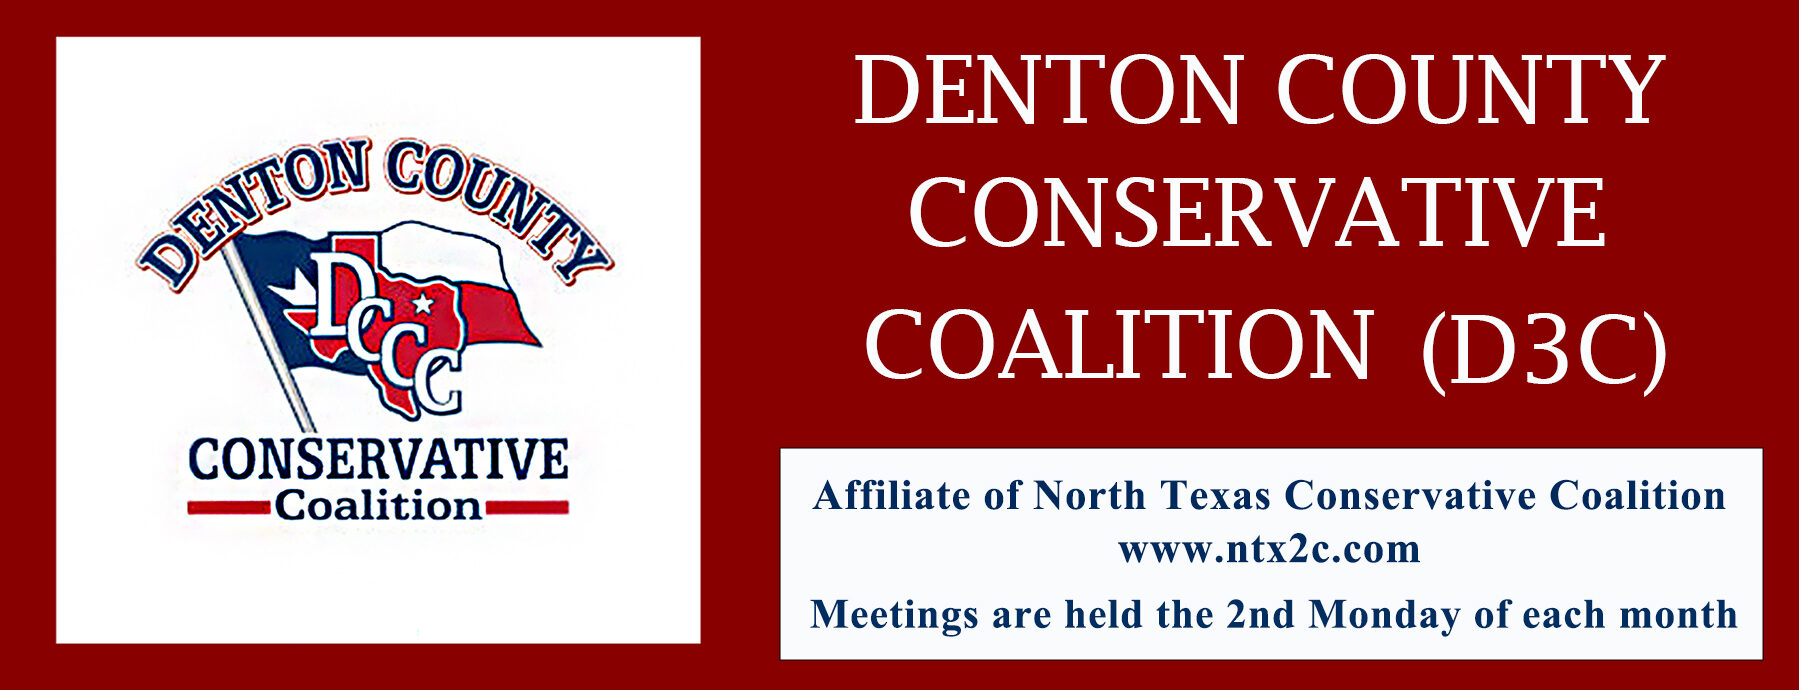 Denton County Conservative Coalition